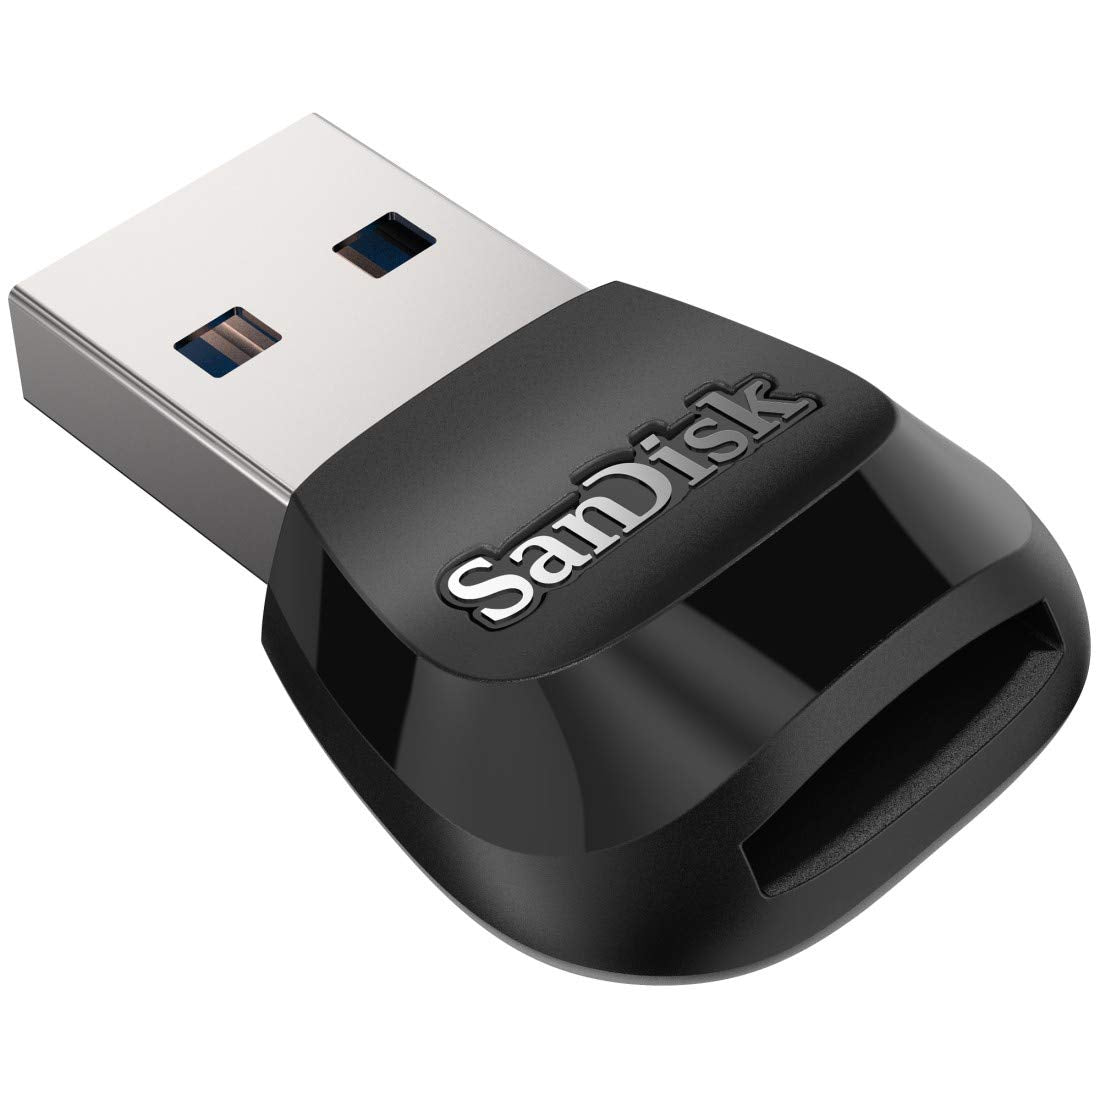 SanDisk MobileMate USB 3.0 microSD Card Reader - SDDR-B531-GN6NN